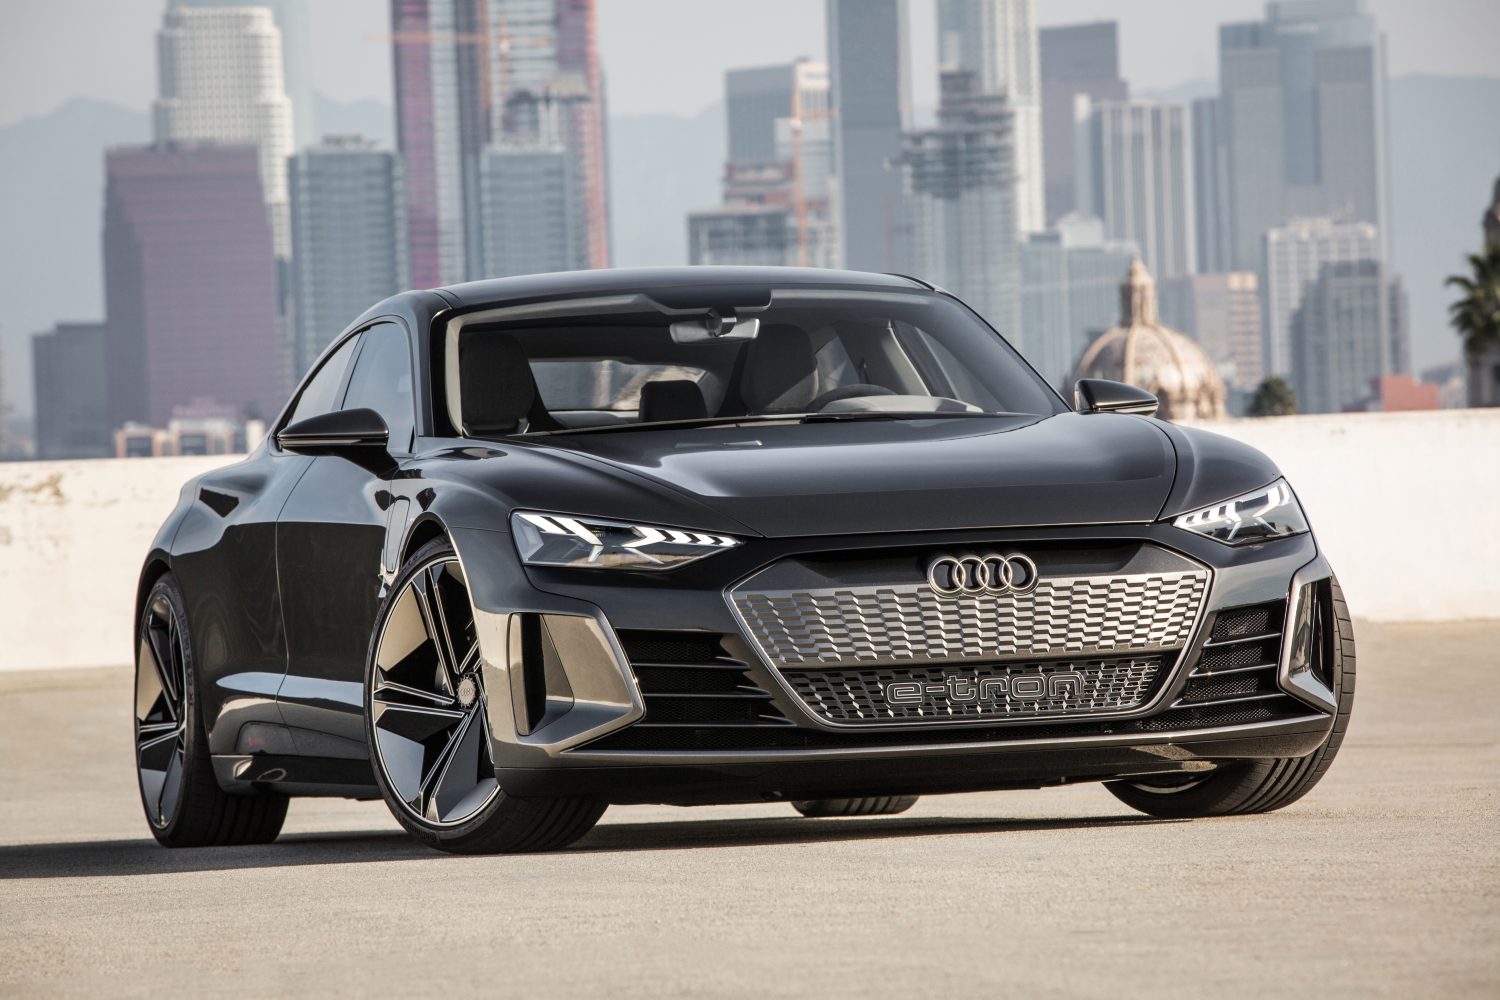 Audi e-tron GT Concept: test drive video roundup